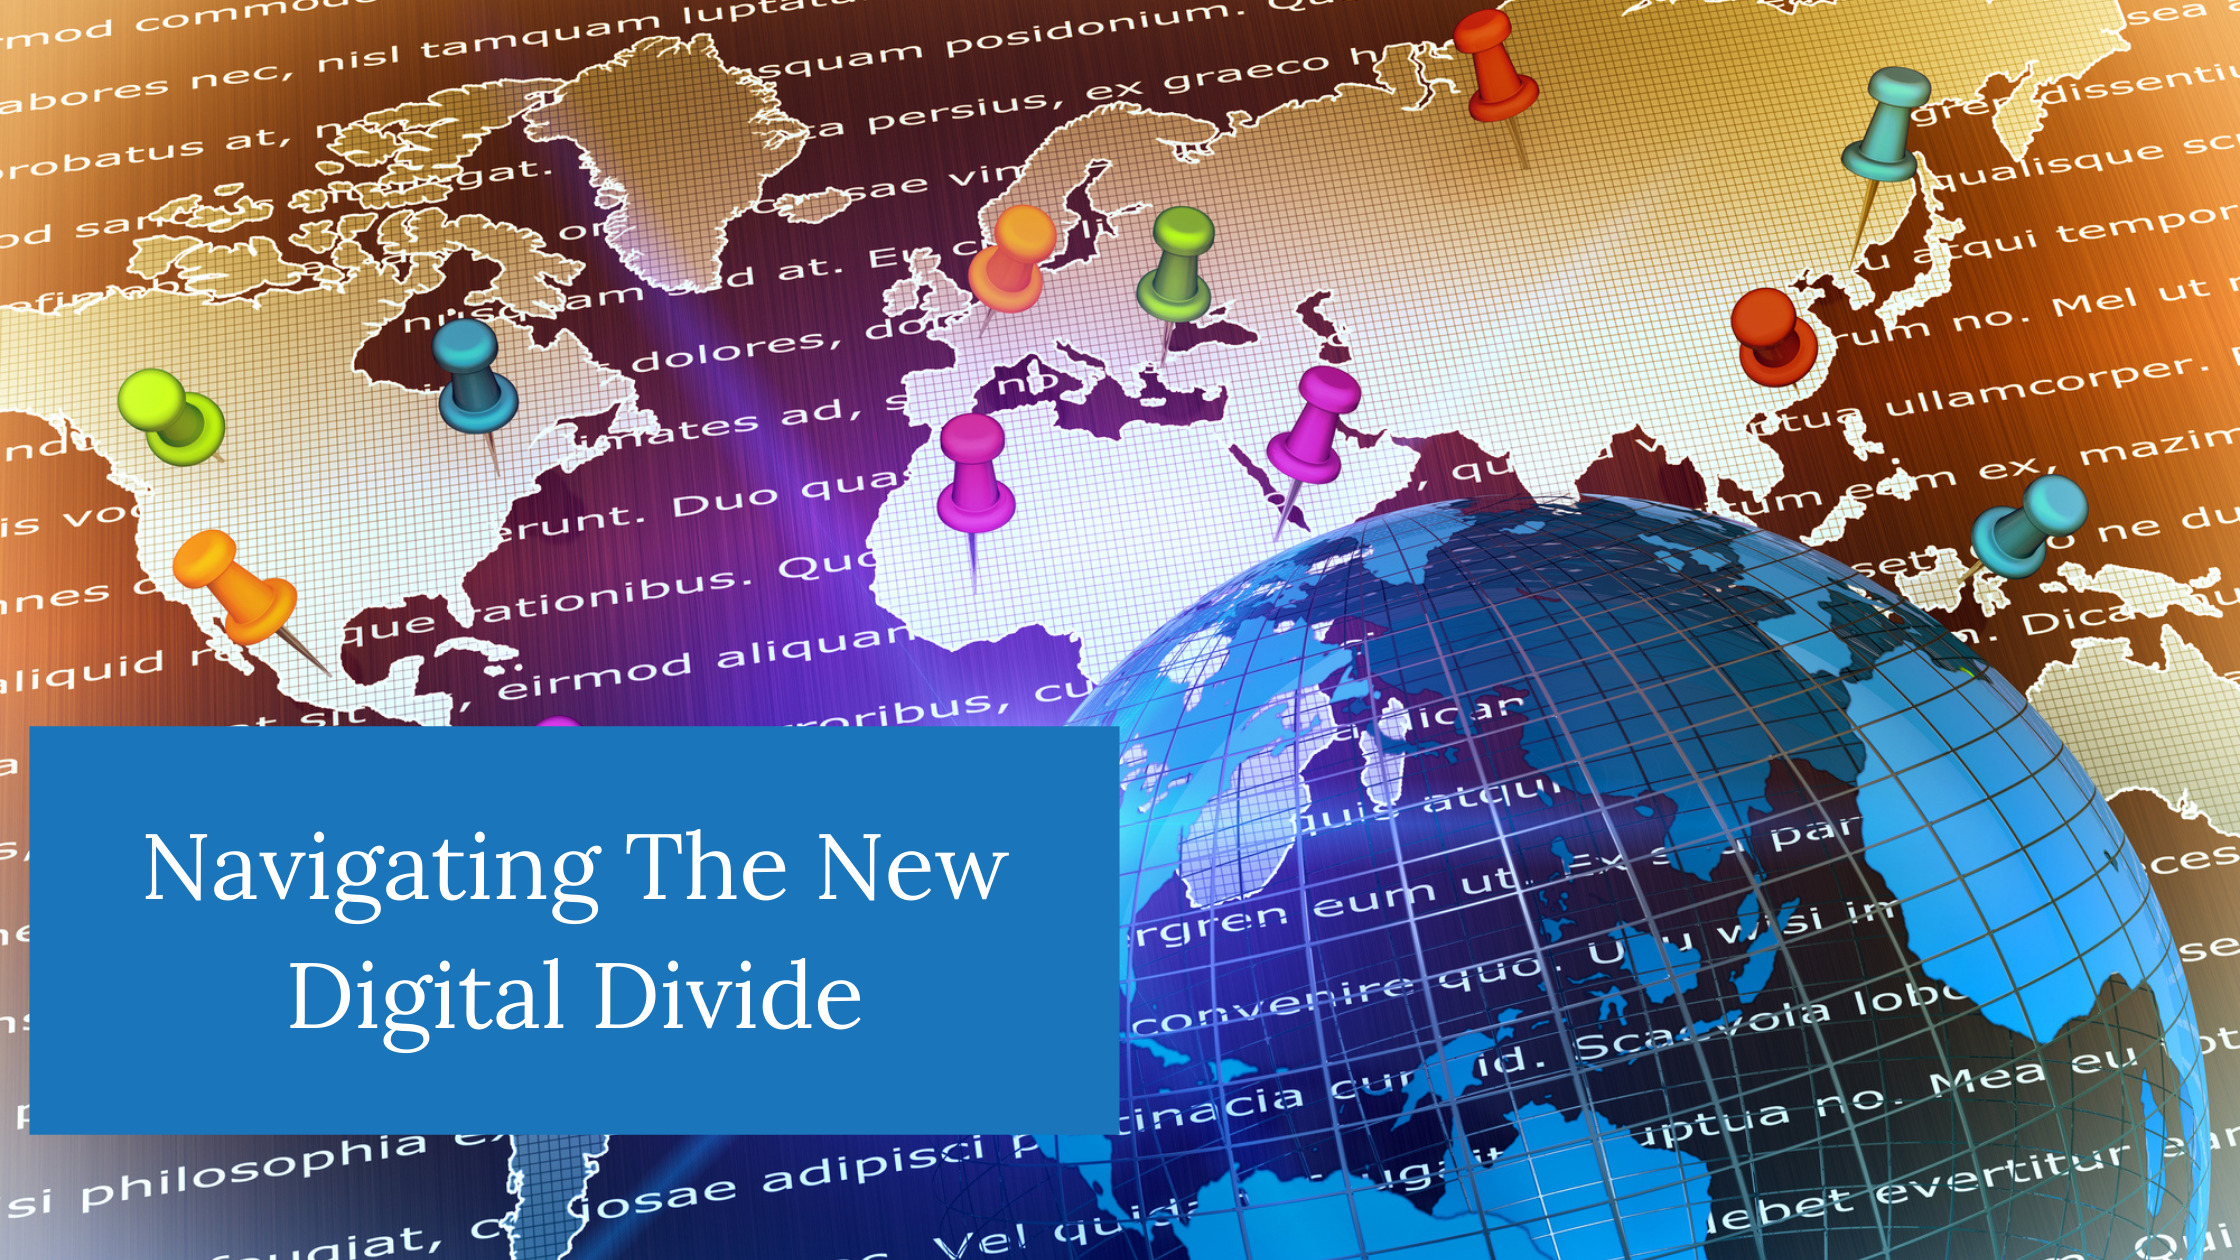 Navigating the new digital divide